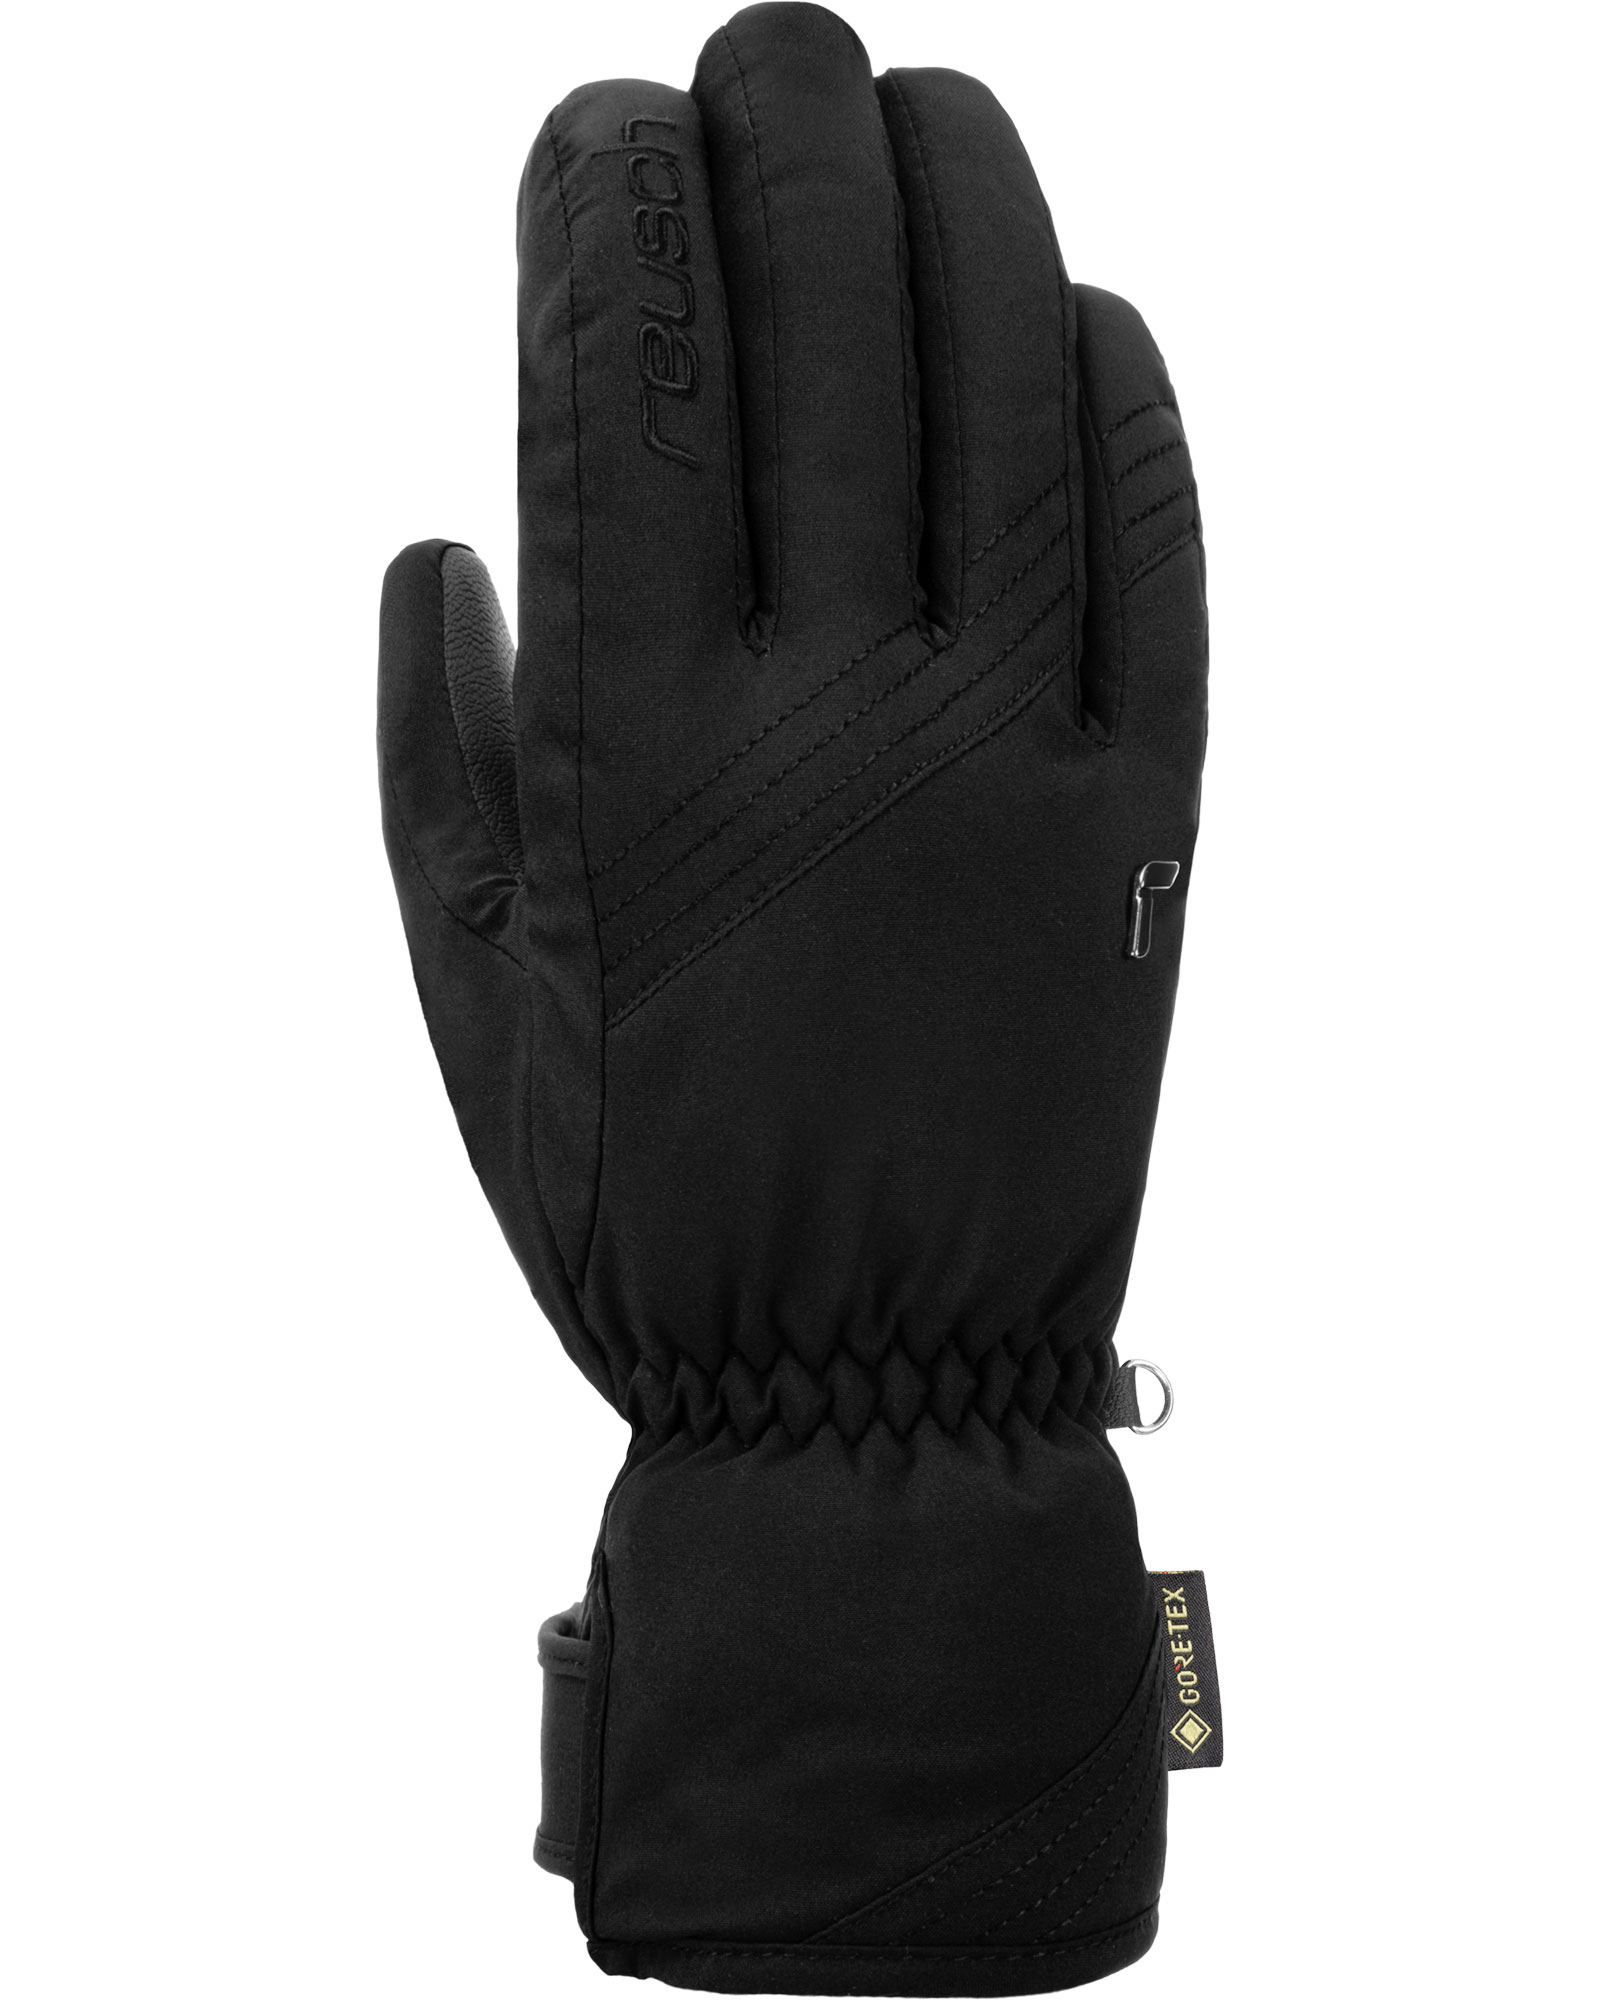 Reusch Susan GORE TEX Women’s Gloves - Black/white Size 8